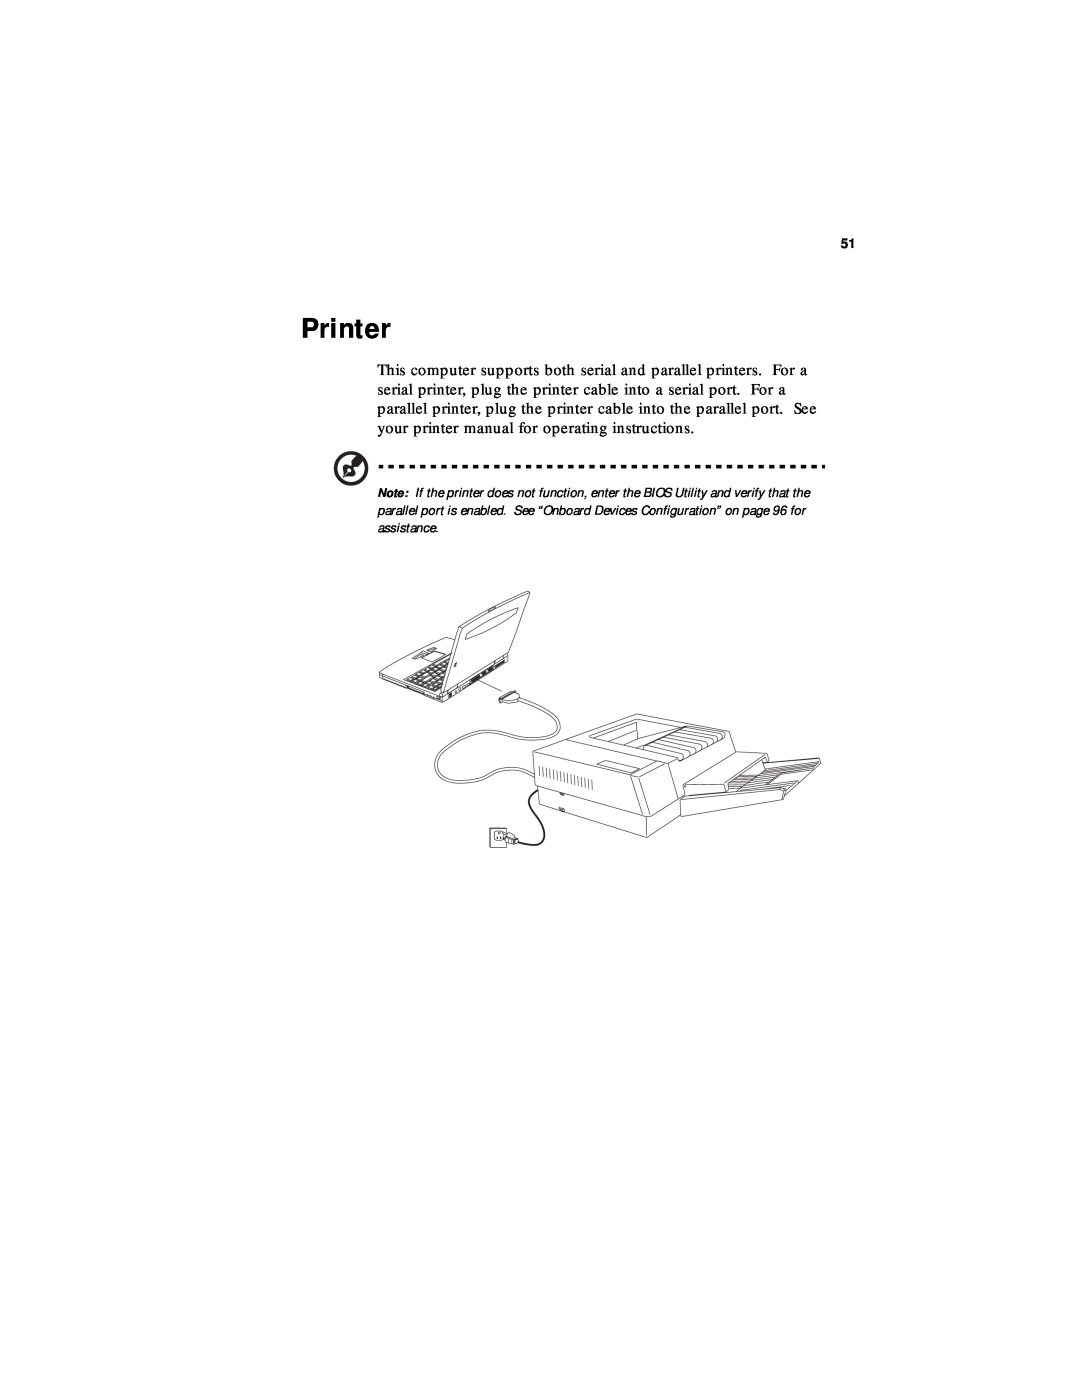 Acer 330 Series manual Printer 